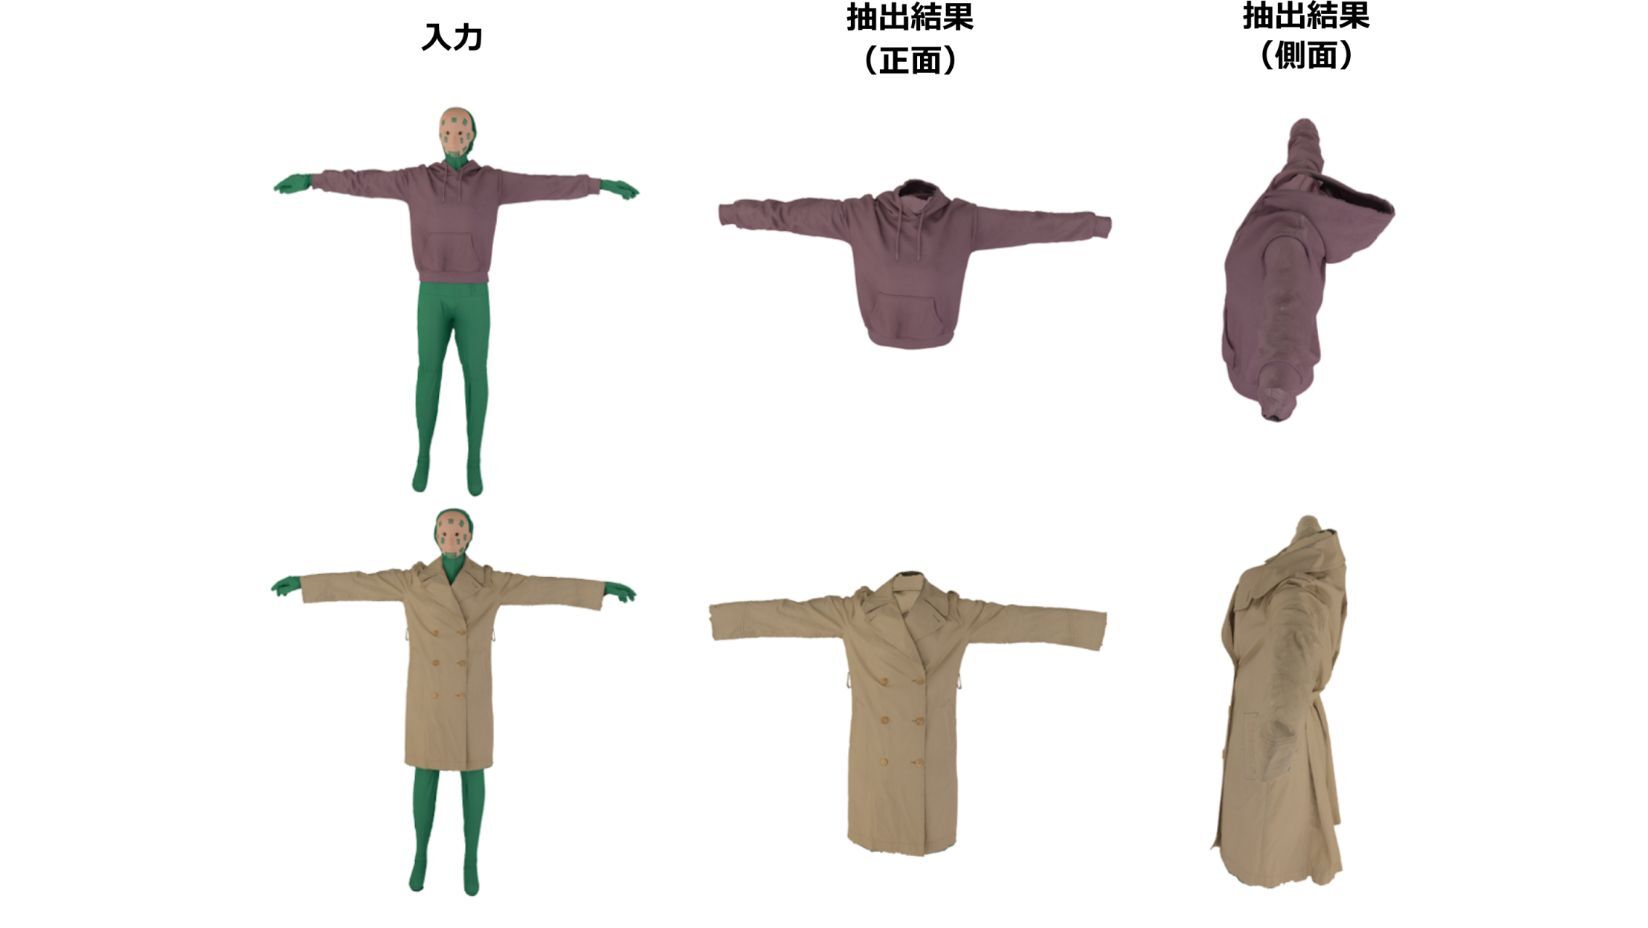 図1 提案手法による衣服の抽出結果例